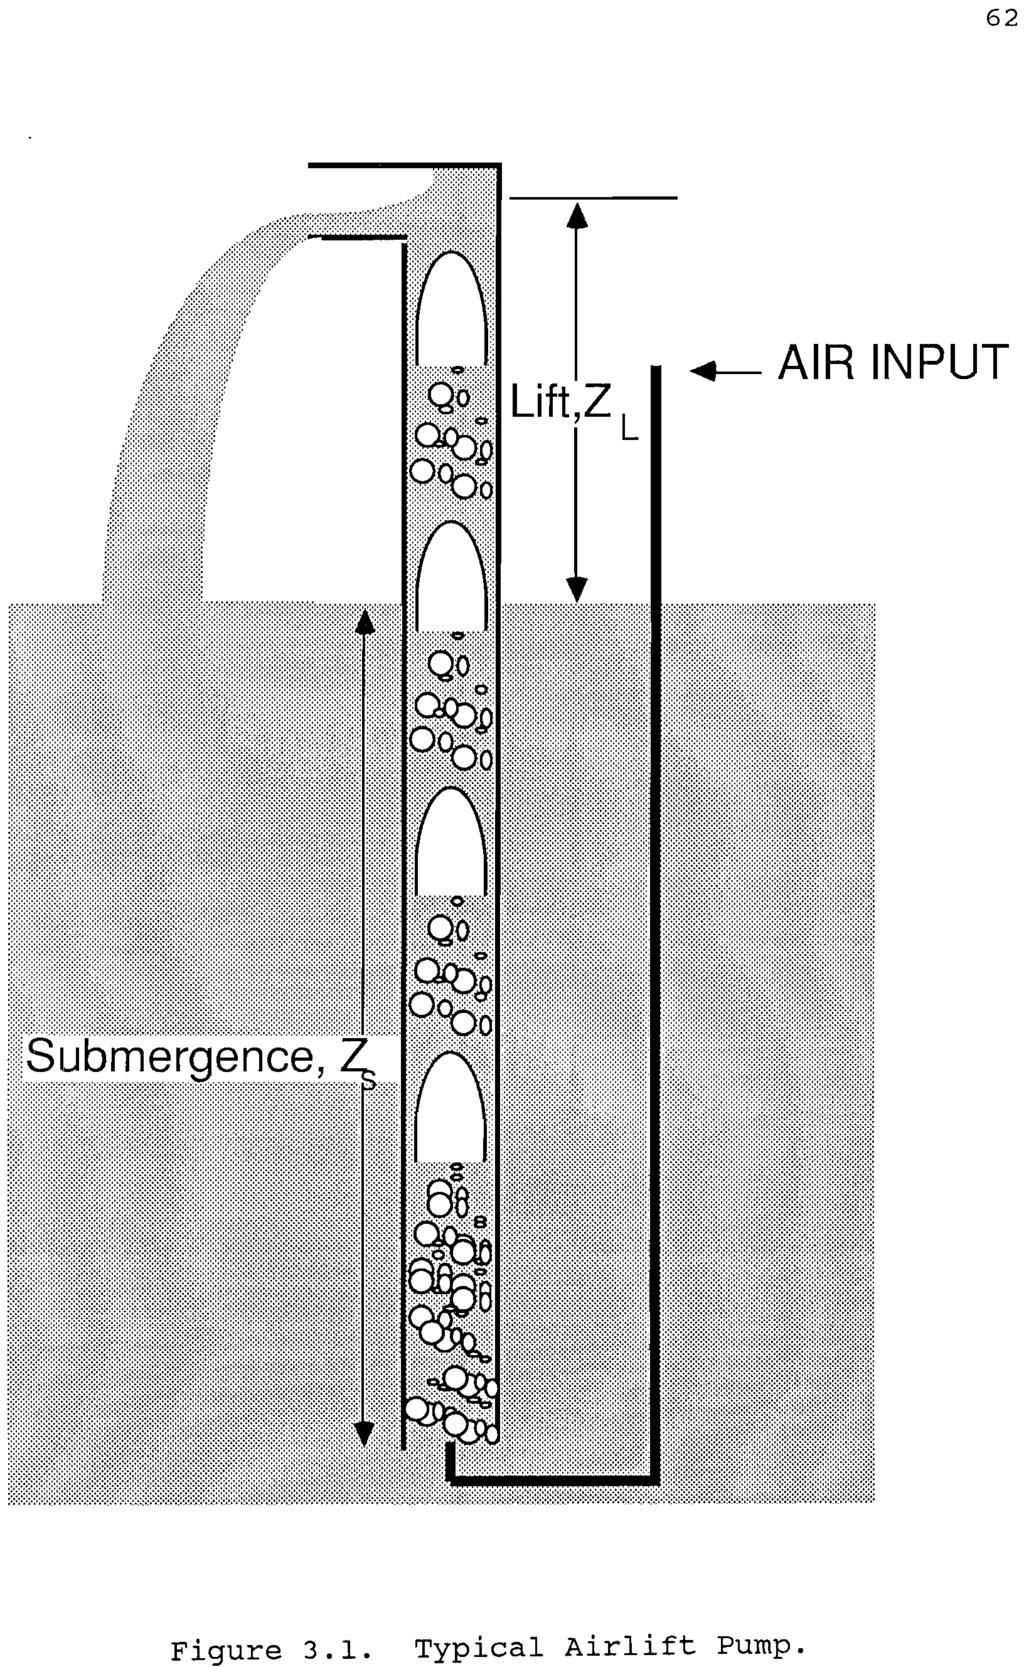 62.-AIR INPUT Figure 3.